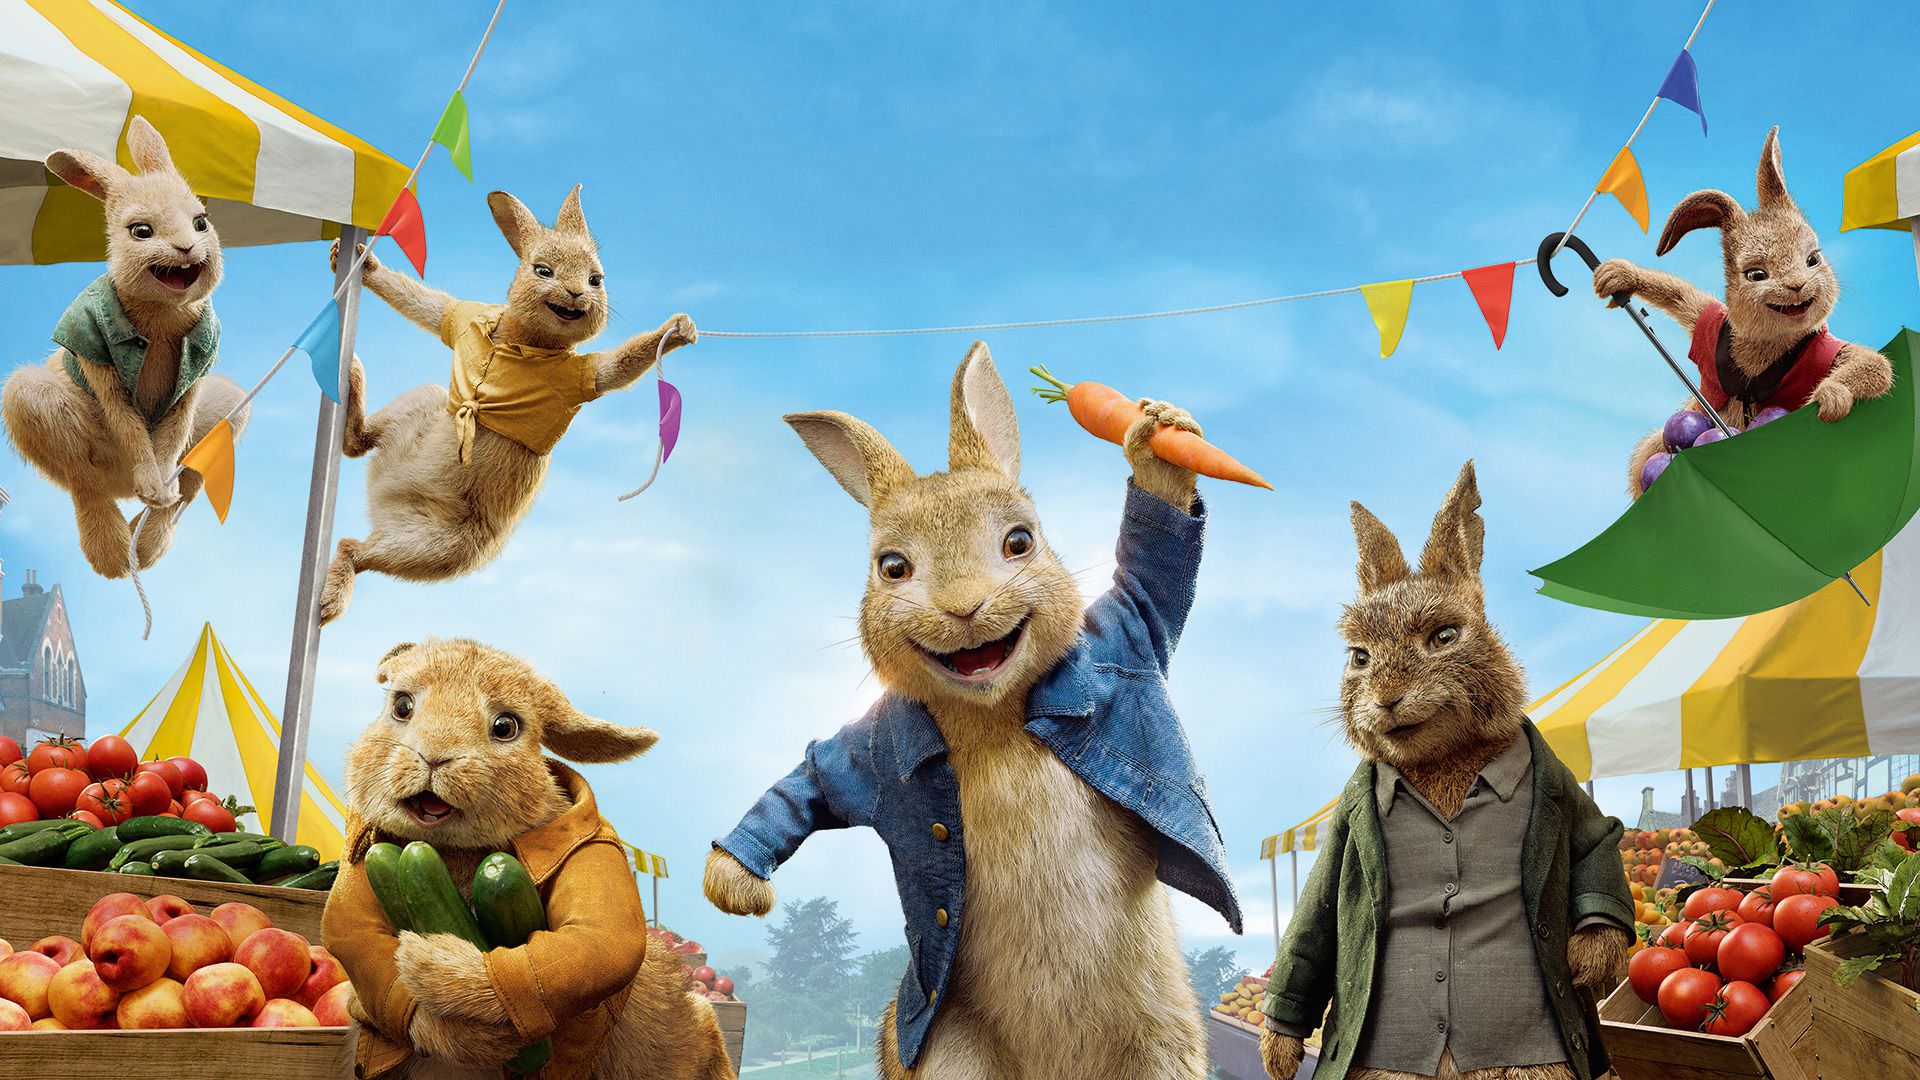 پیتر خرگوشه و بارناباس در حال دزدی از مرکز فروش محصولات کشاورزی در پوستر فیلم Peter Rabbit 2 The Runaway